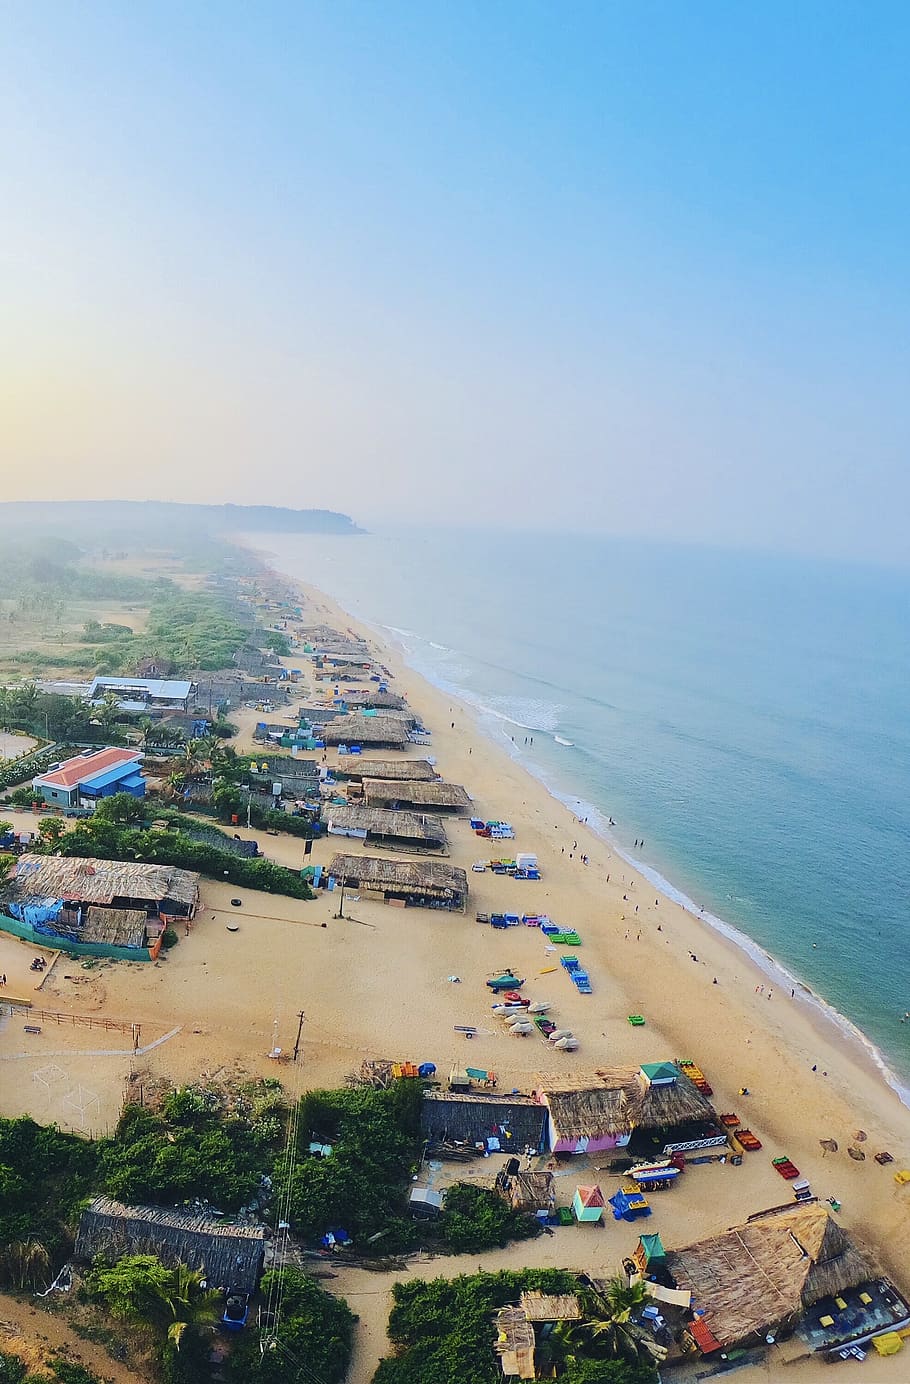 Calangute beach in Goa